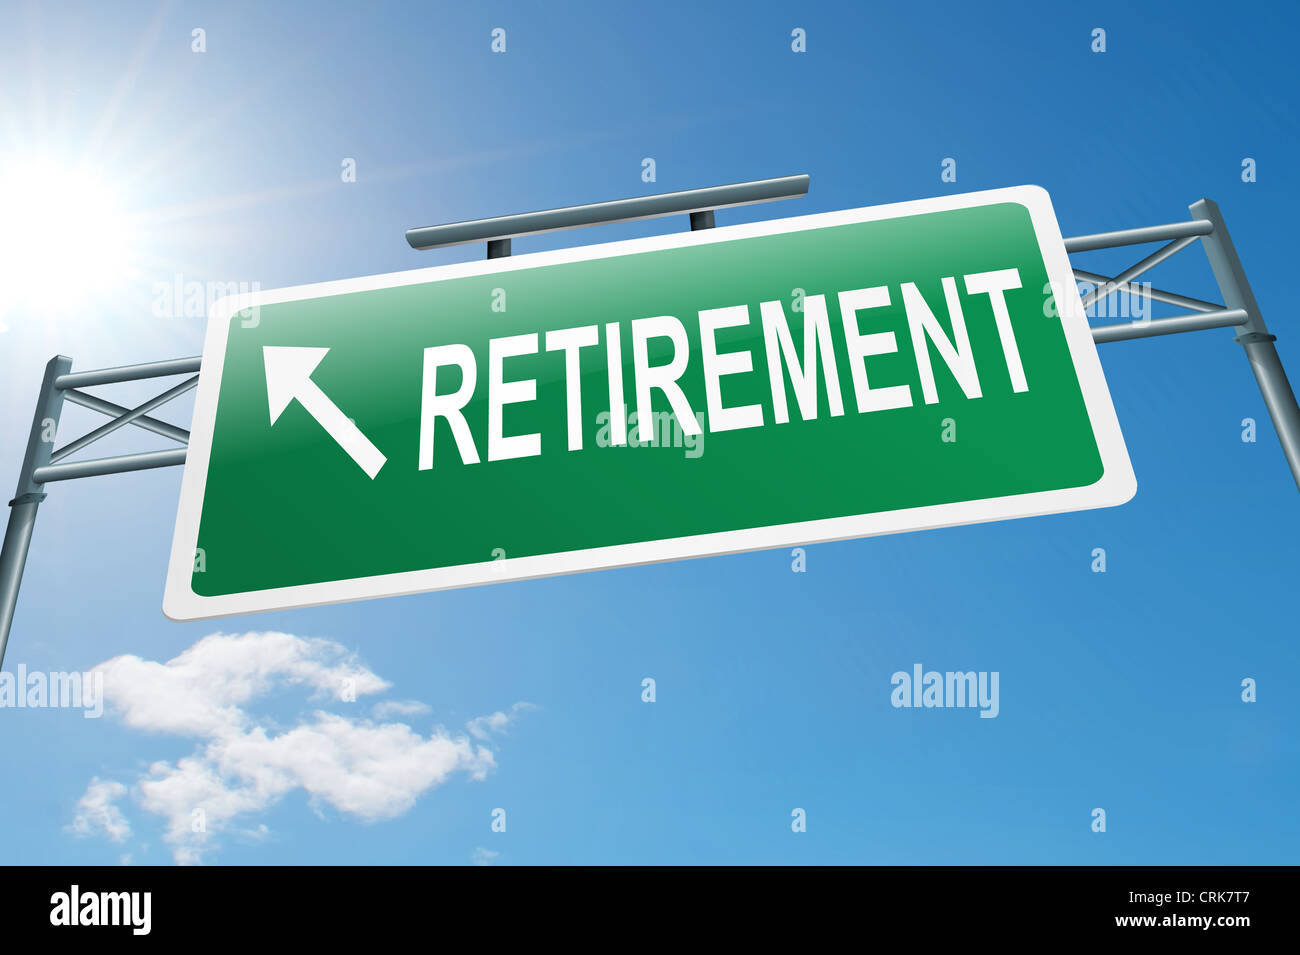 Retirement concept. Stock Photo